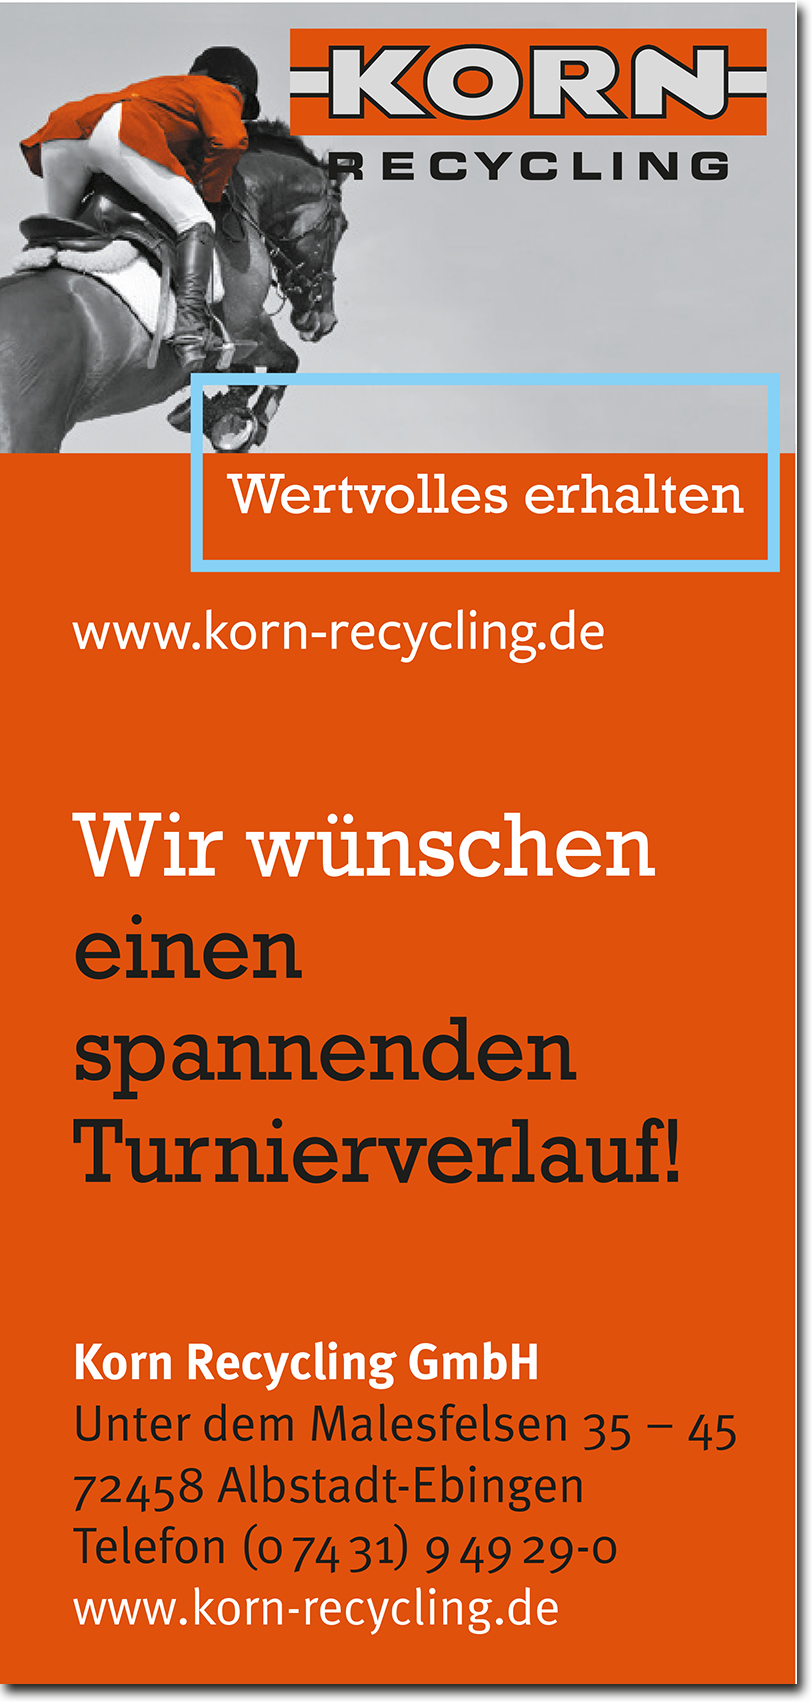 KORN Recycling GmbH